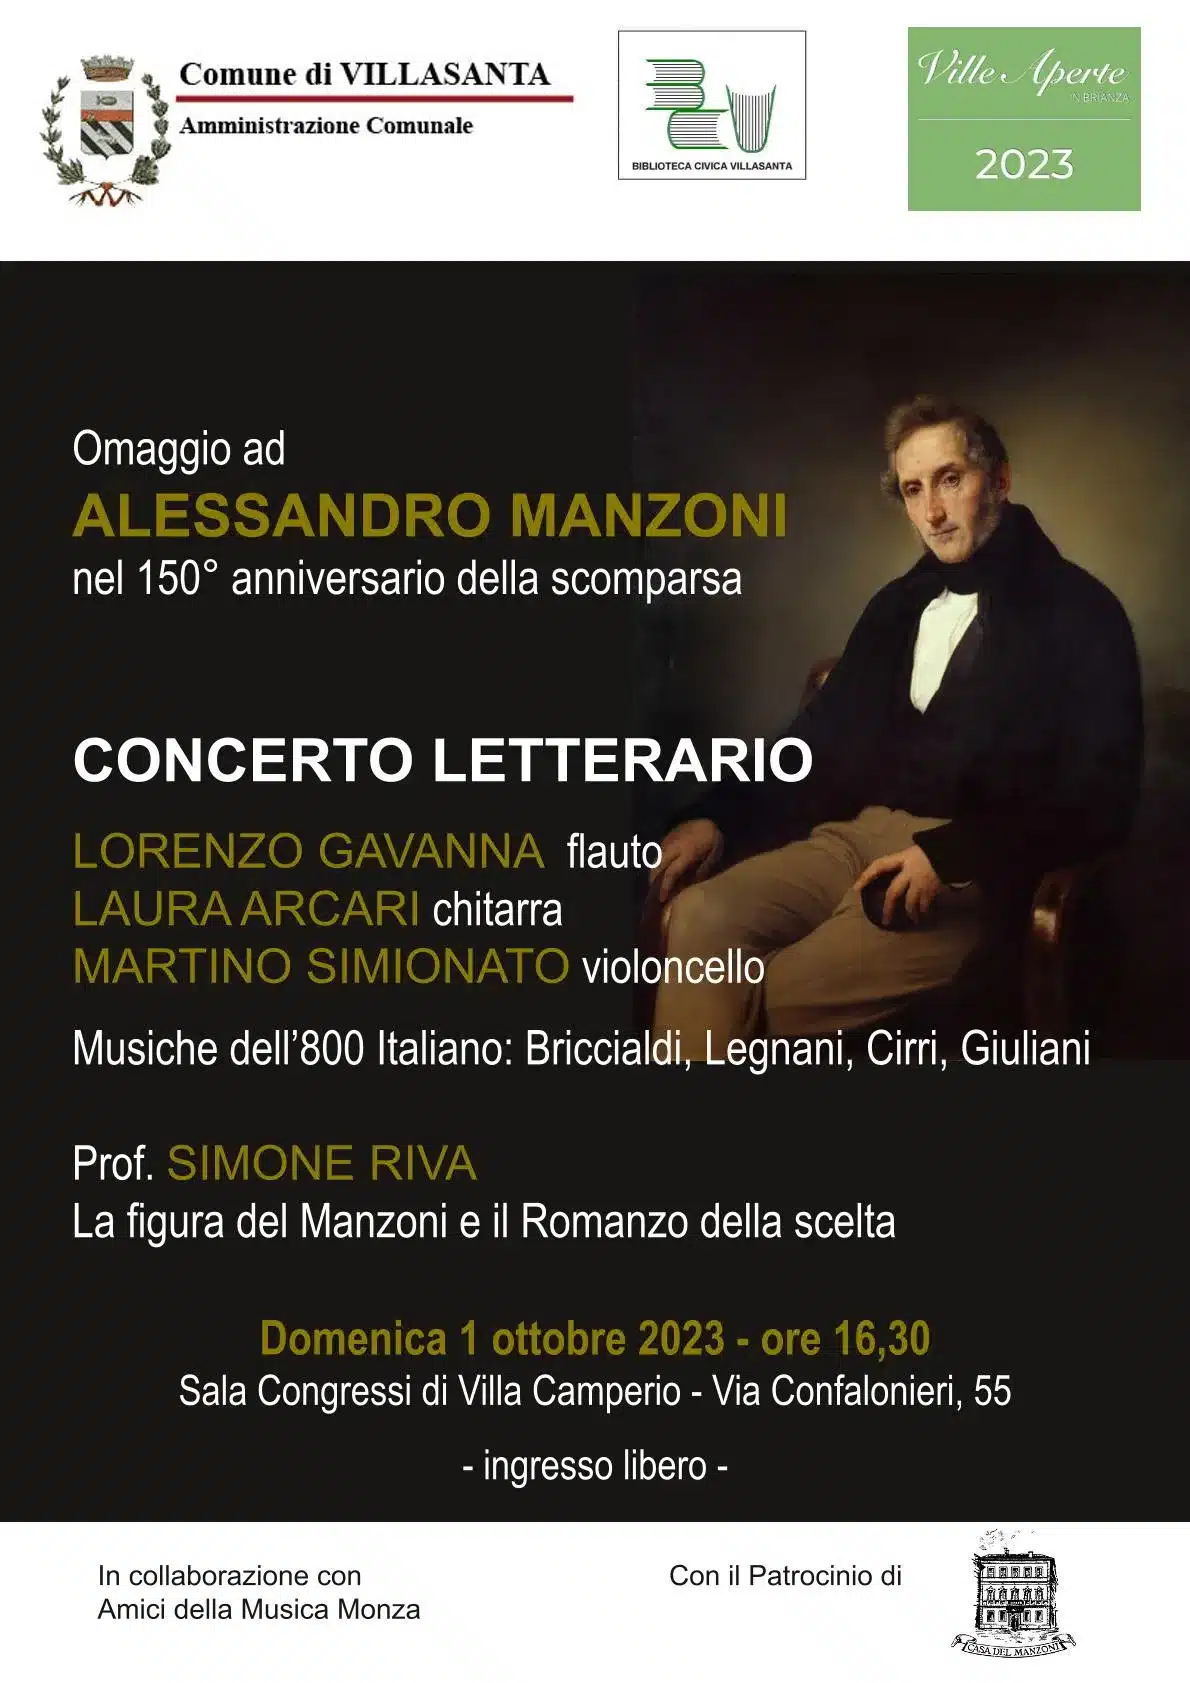 Concerto per Manzoni